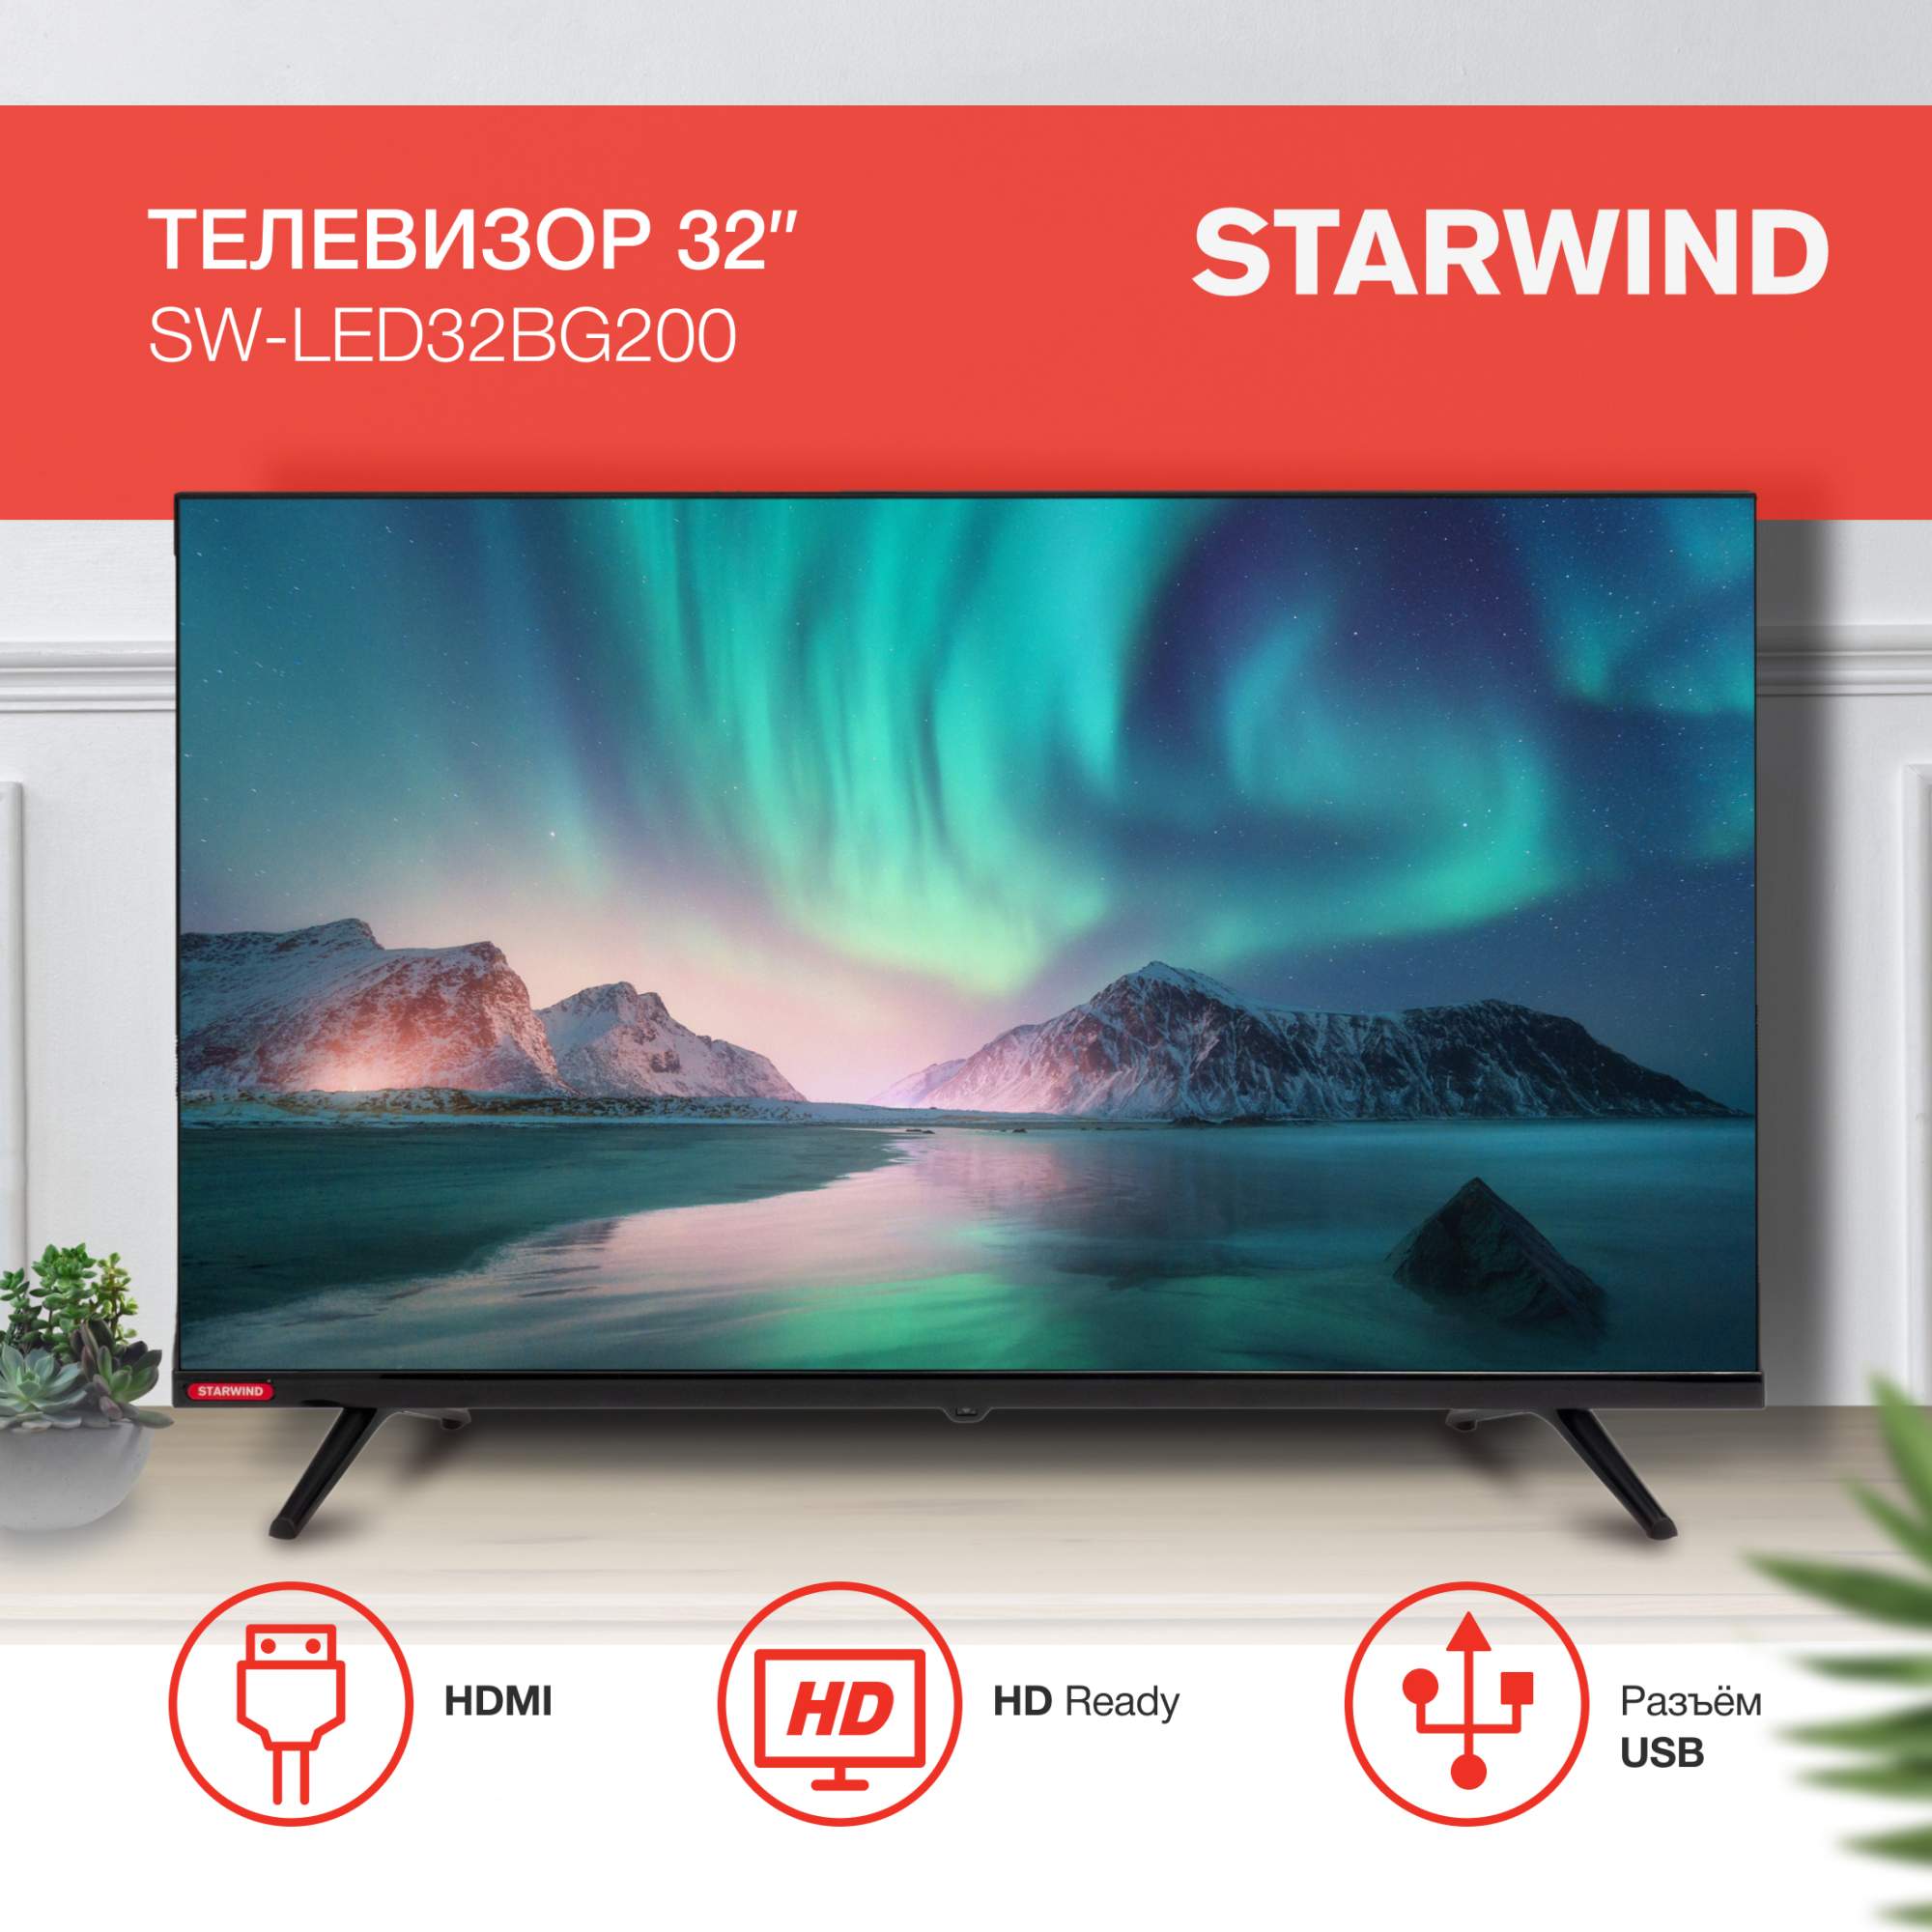 Телевизор STARWIND SW-LED32BG200, 32"(81 см), HD – купить в Москве, цены в интернет-магазинах на Мегамаркет